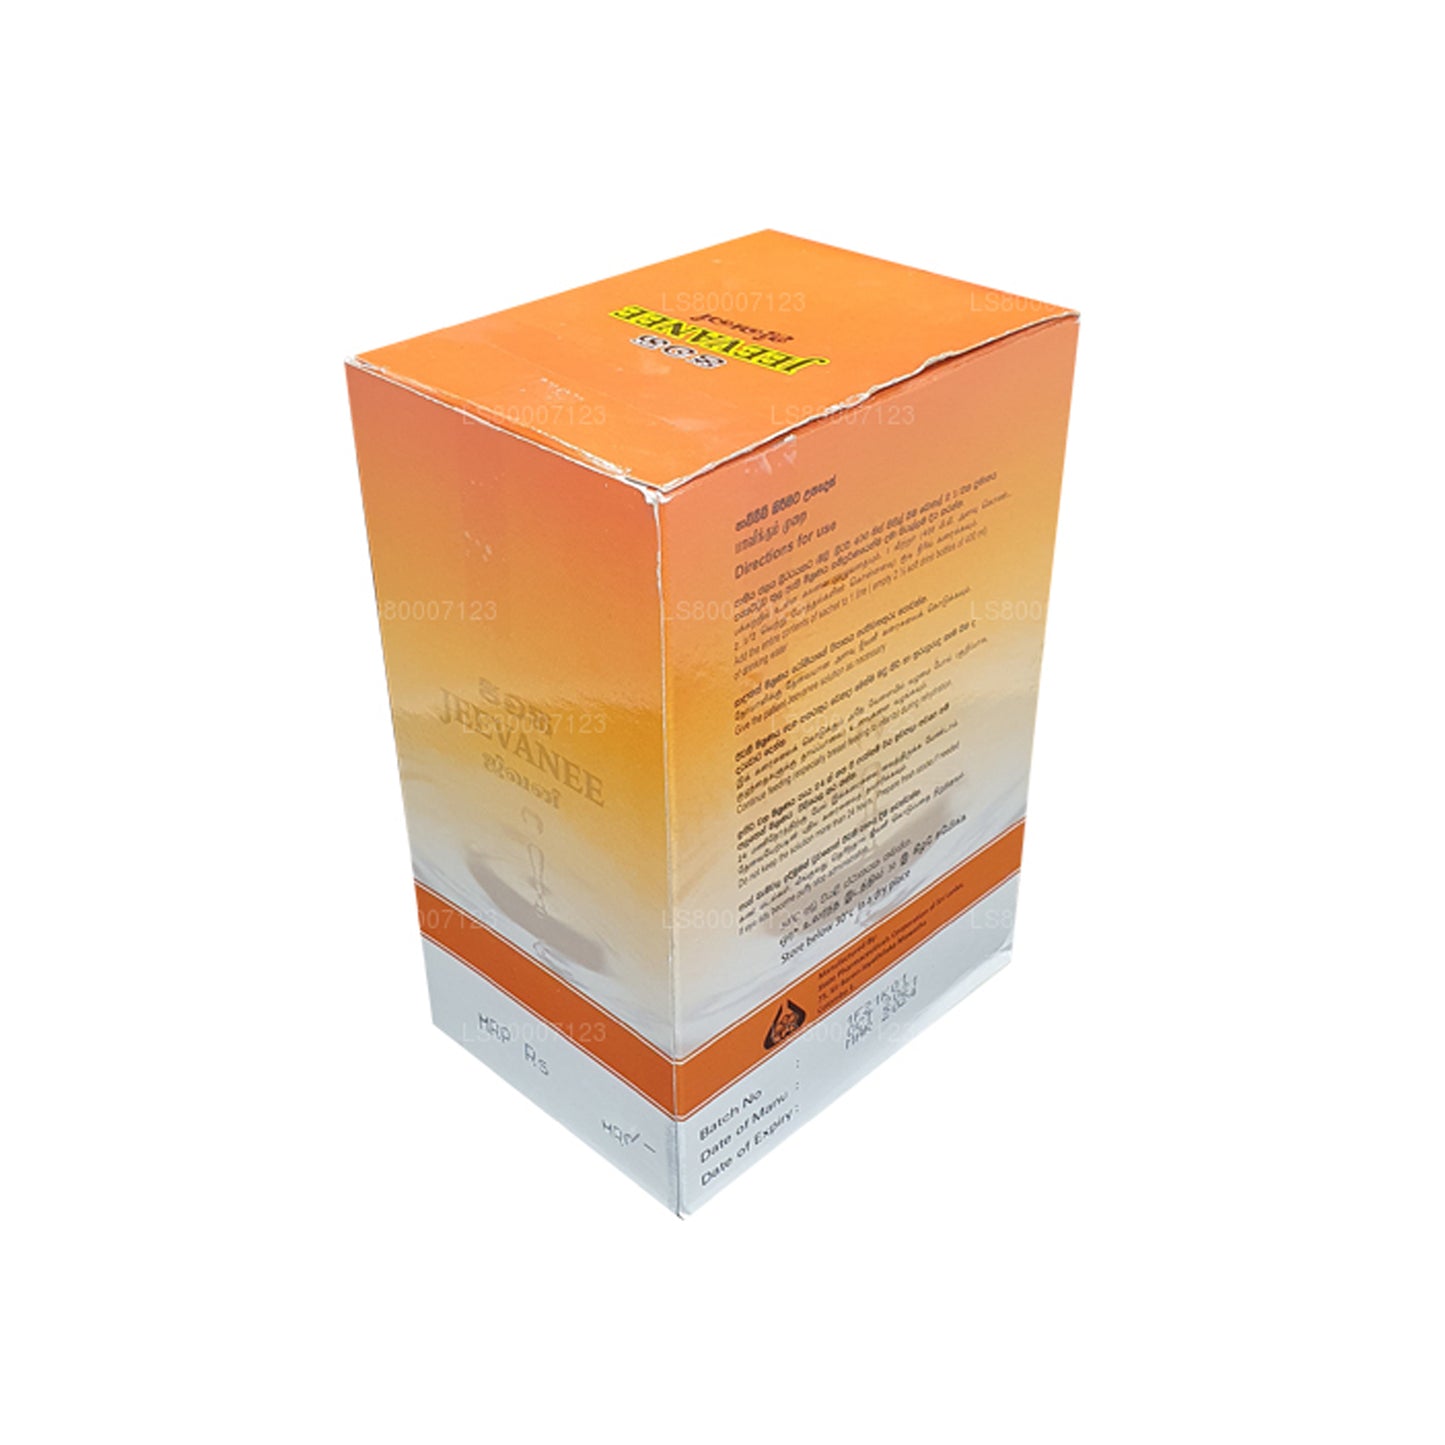 Соли для пероральной регидратации со вкусом апельсина Jeevanee (25 пакетиков)